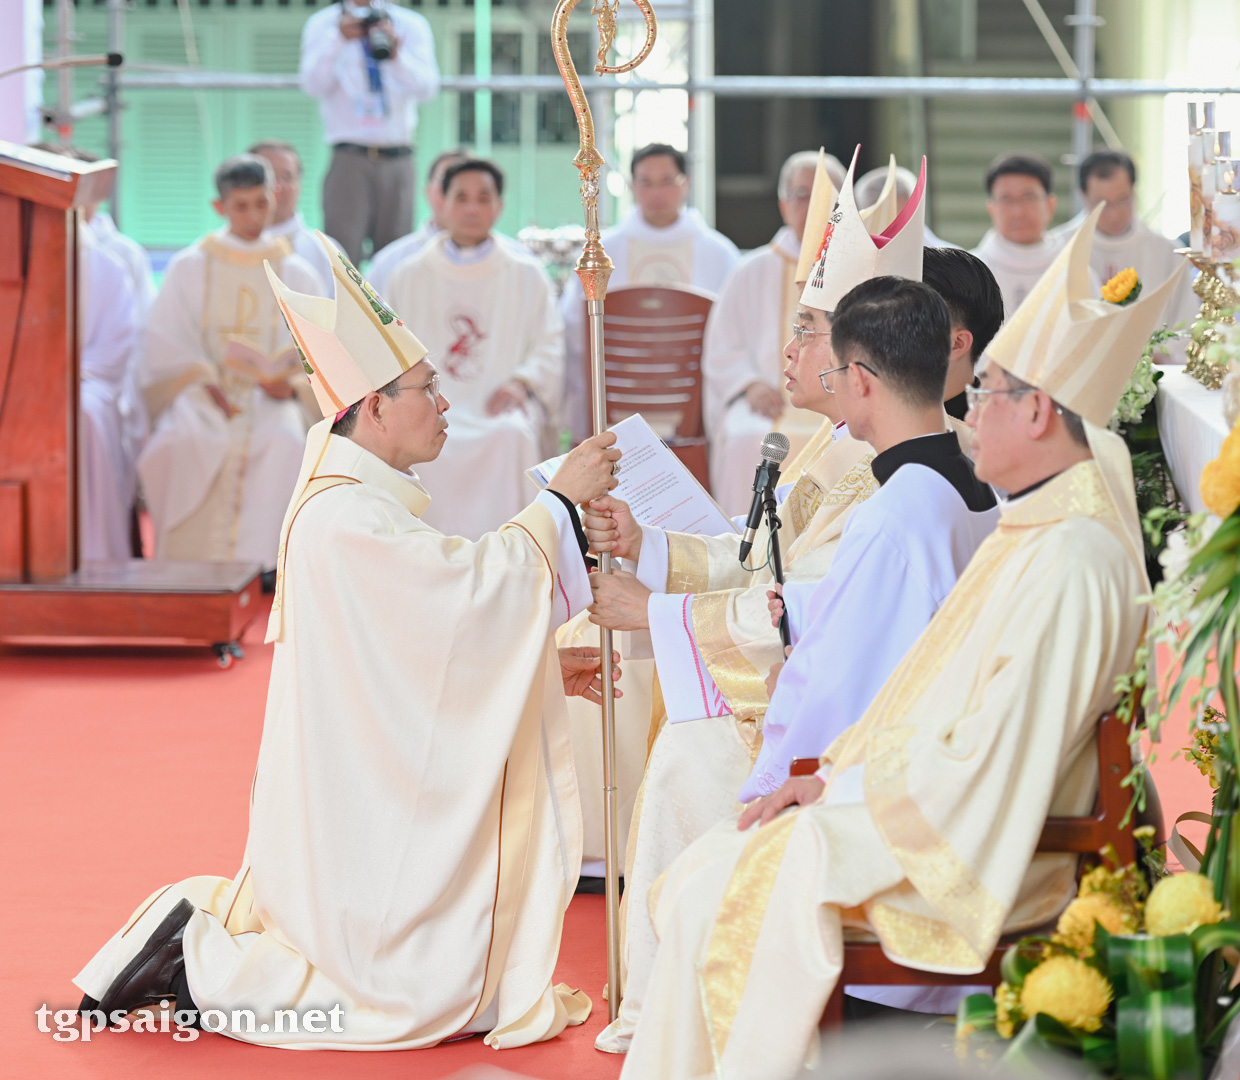 TGP Sài Gòn: Thánh lễ truyền chức Giám mục Giuse Bùi Công Trác ngày 3-1-2023